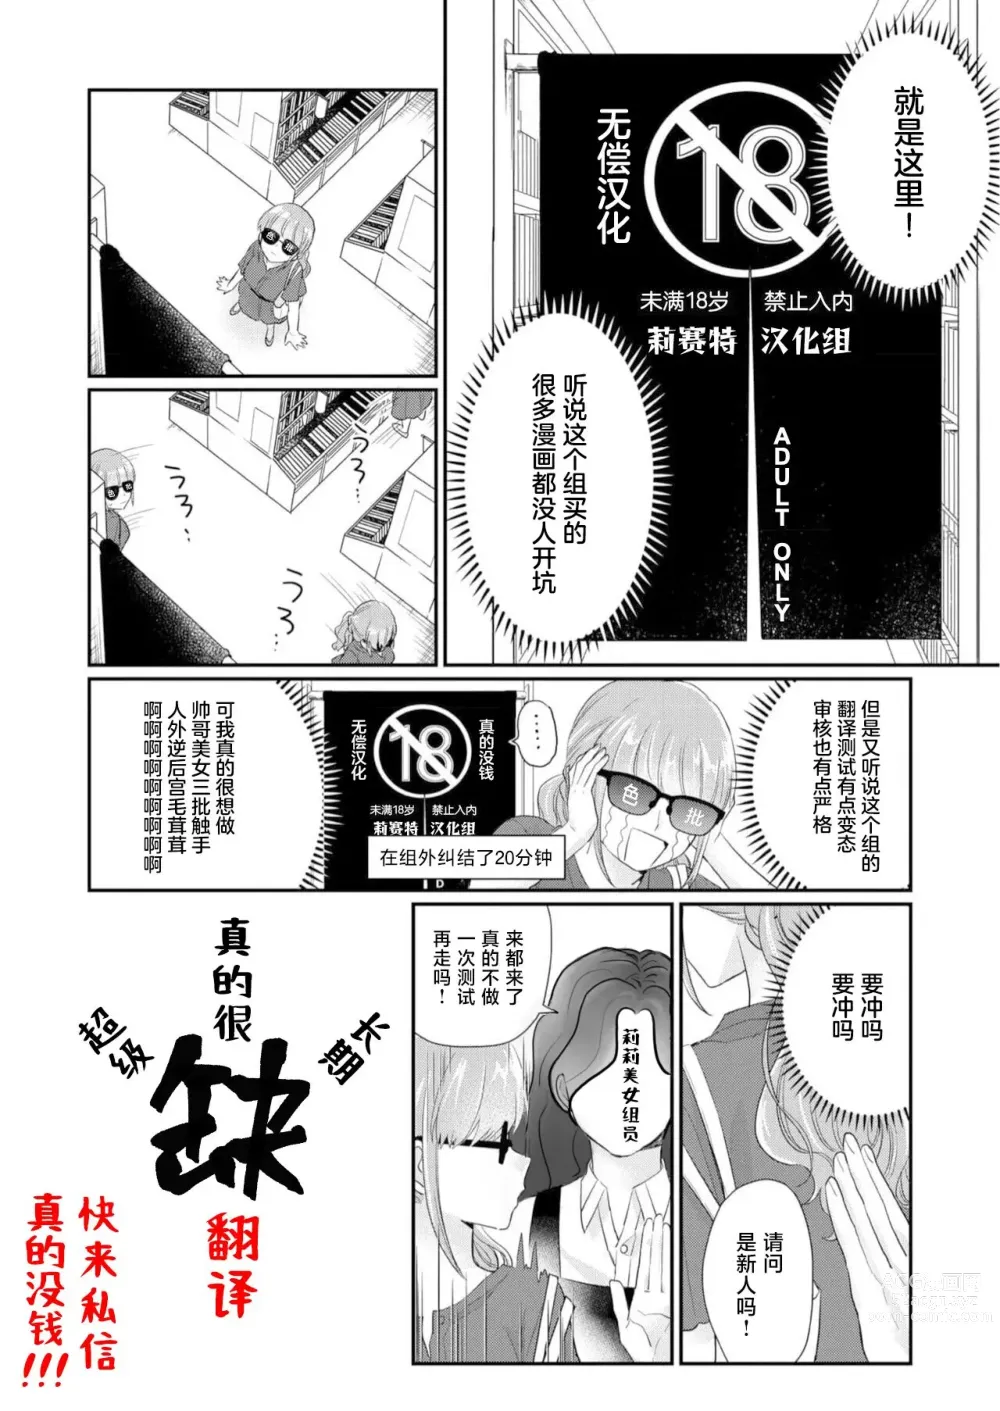 Page 10 of manga 强势大姐姐×强势大姐姐百合短漫 后篇